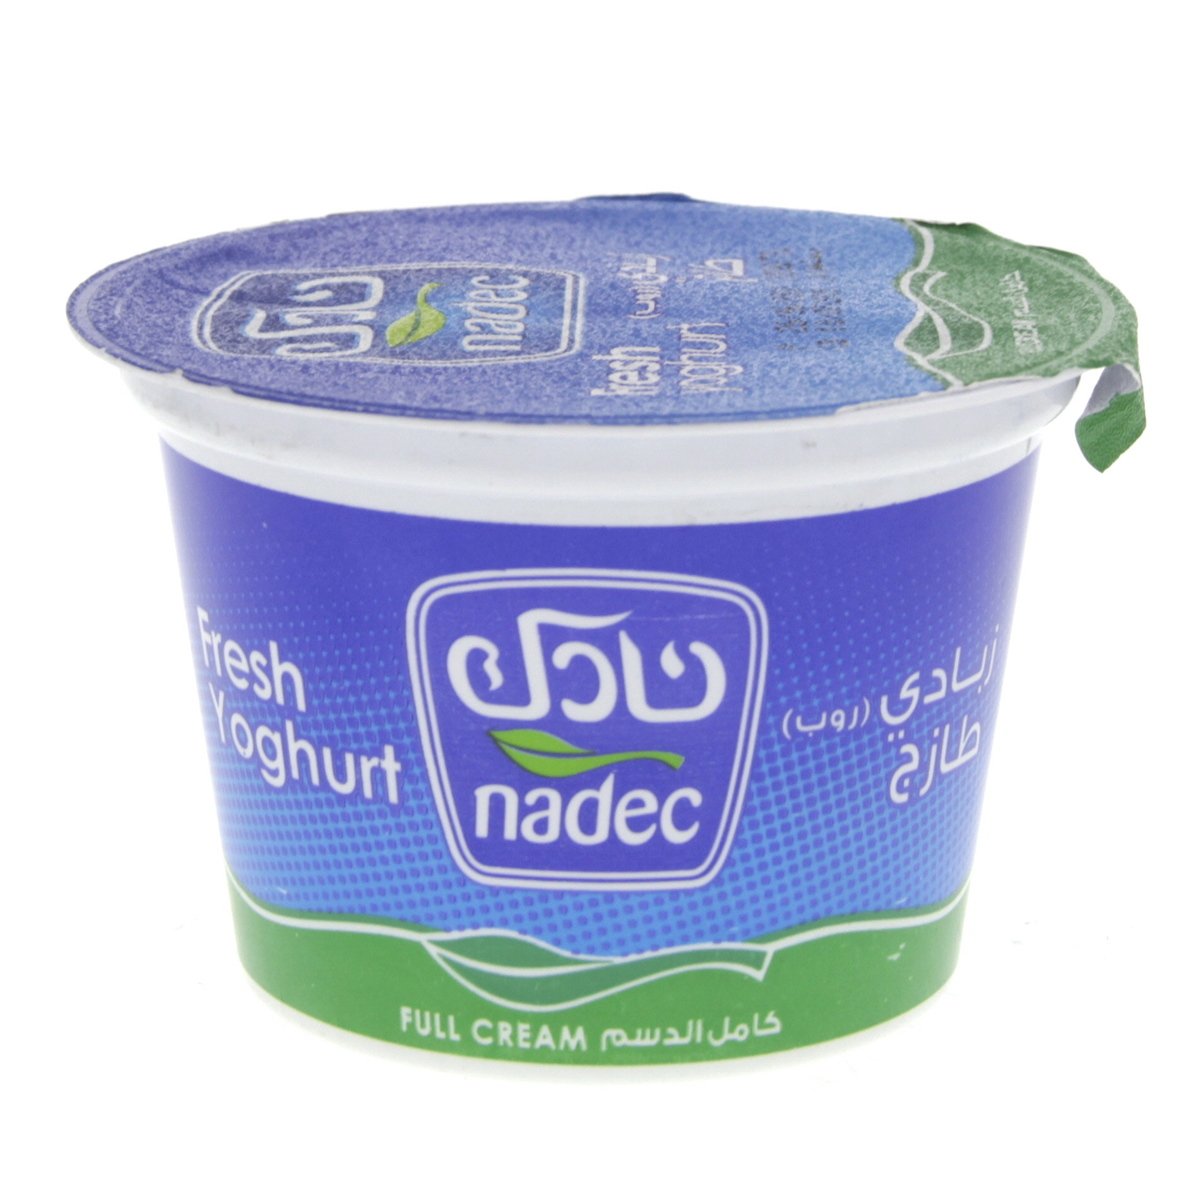 اشتري قم بشراء نادك زبادي طازج كامل الدسم 170جم Online at Best Price من الموقع - من لولو هايبر ماركت Plain Yoghurt في السعودية